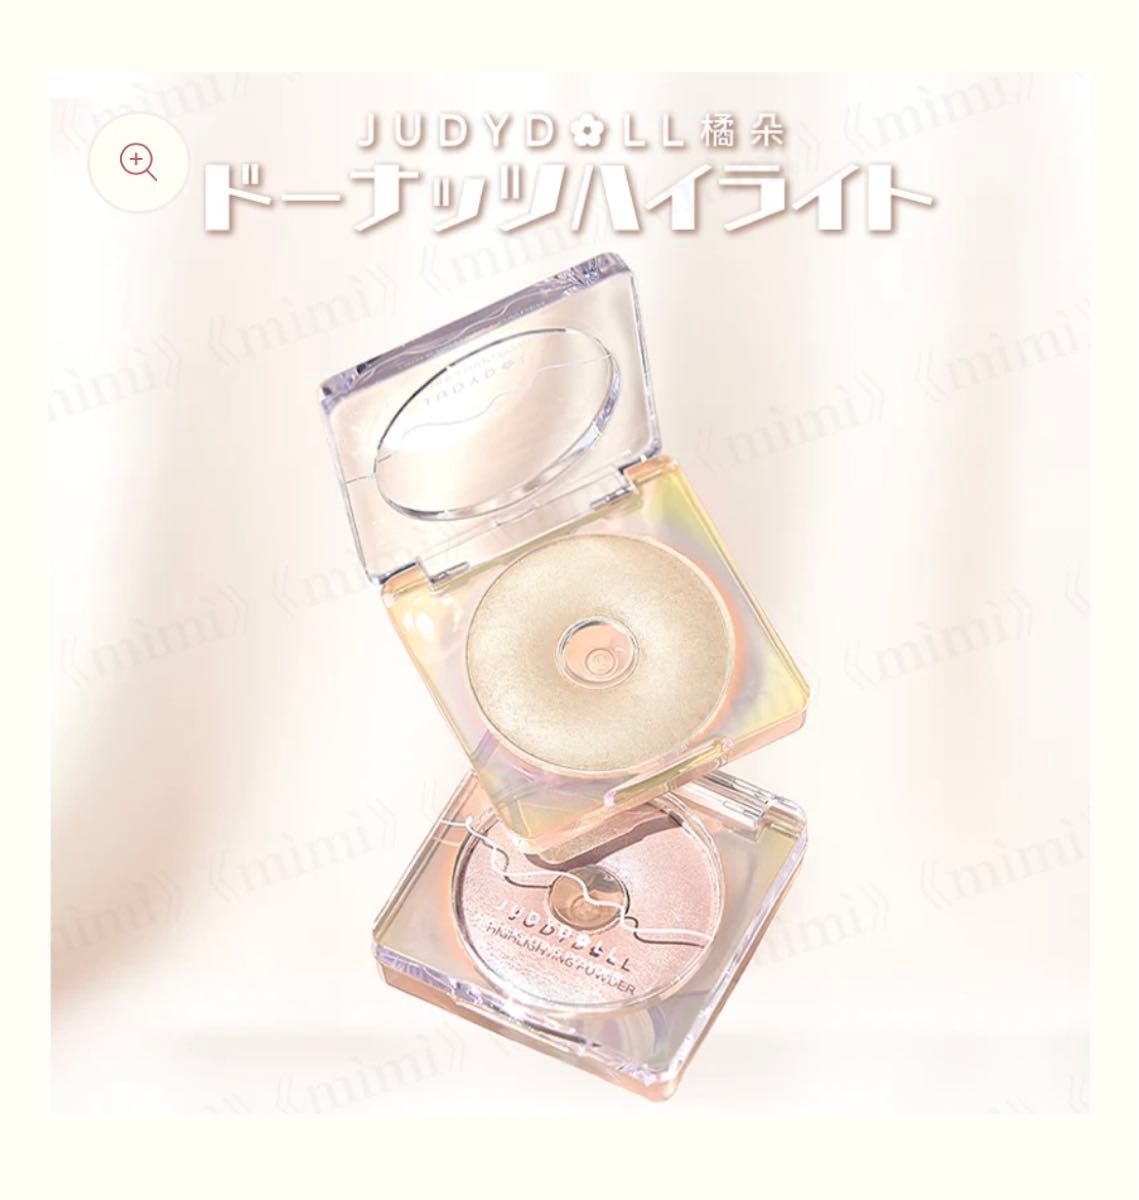 JUDYDOLL ドーナッツハイライト01.04の2個セット！各¥1,320の商品ですが1度使用しました。